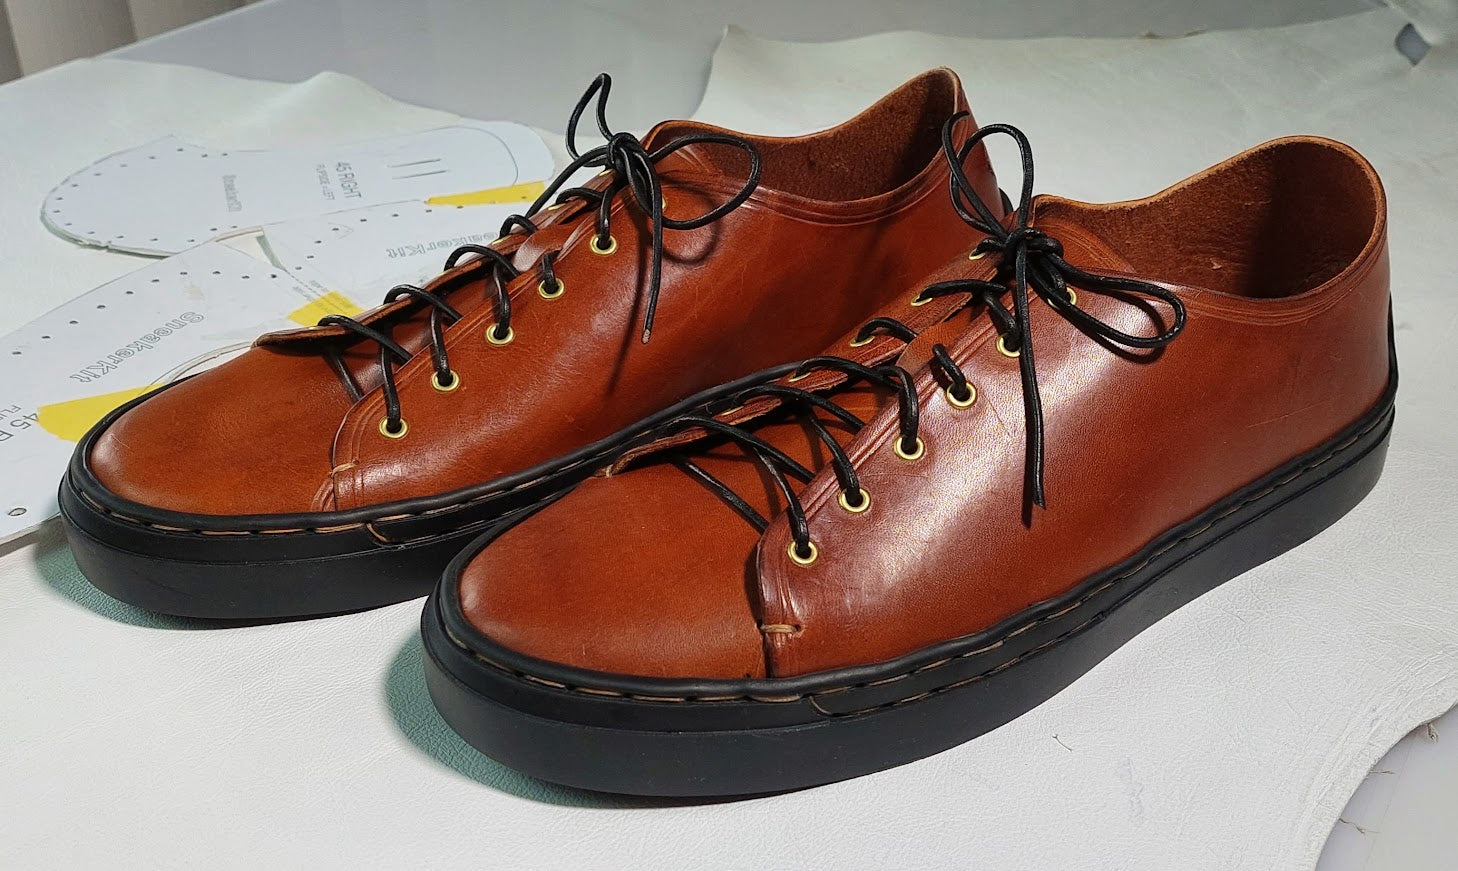 Sneaker / Shoe Kit, Size 36